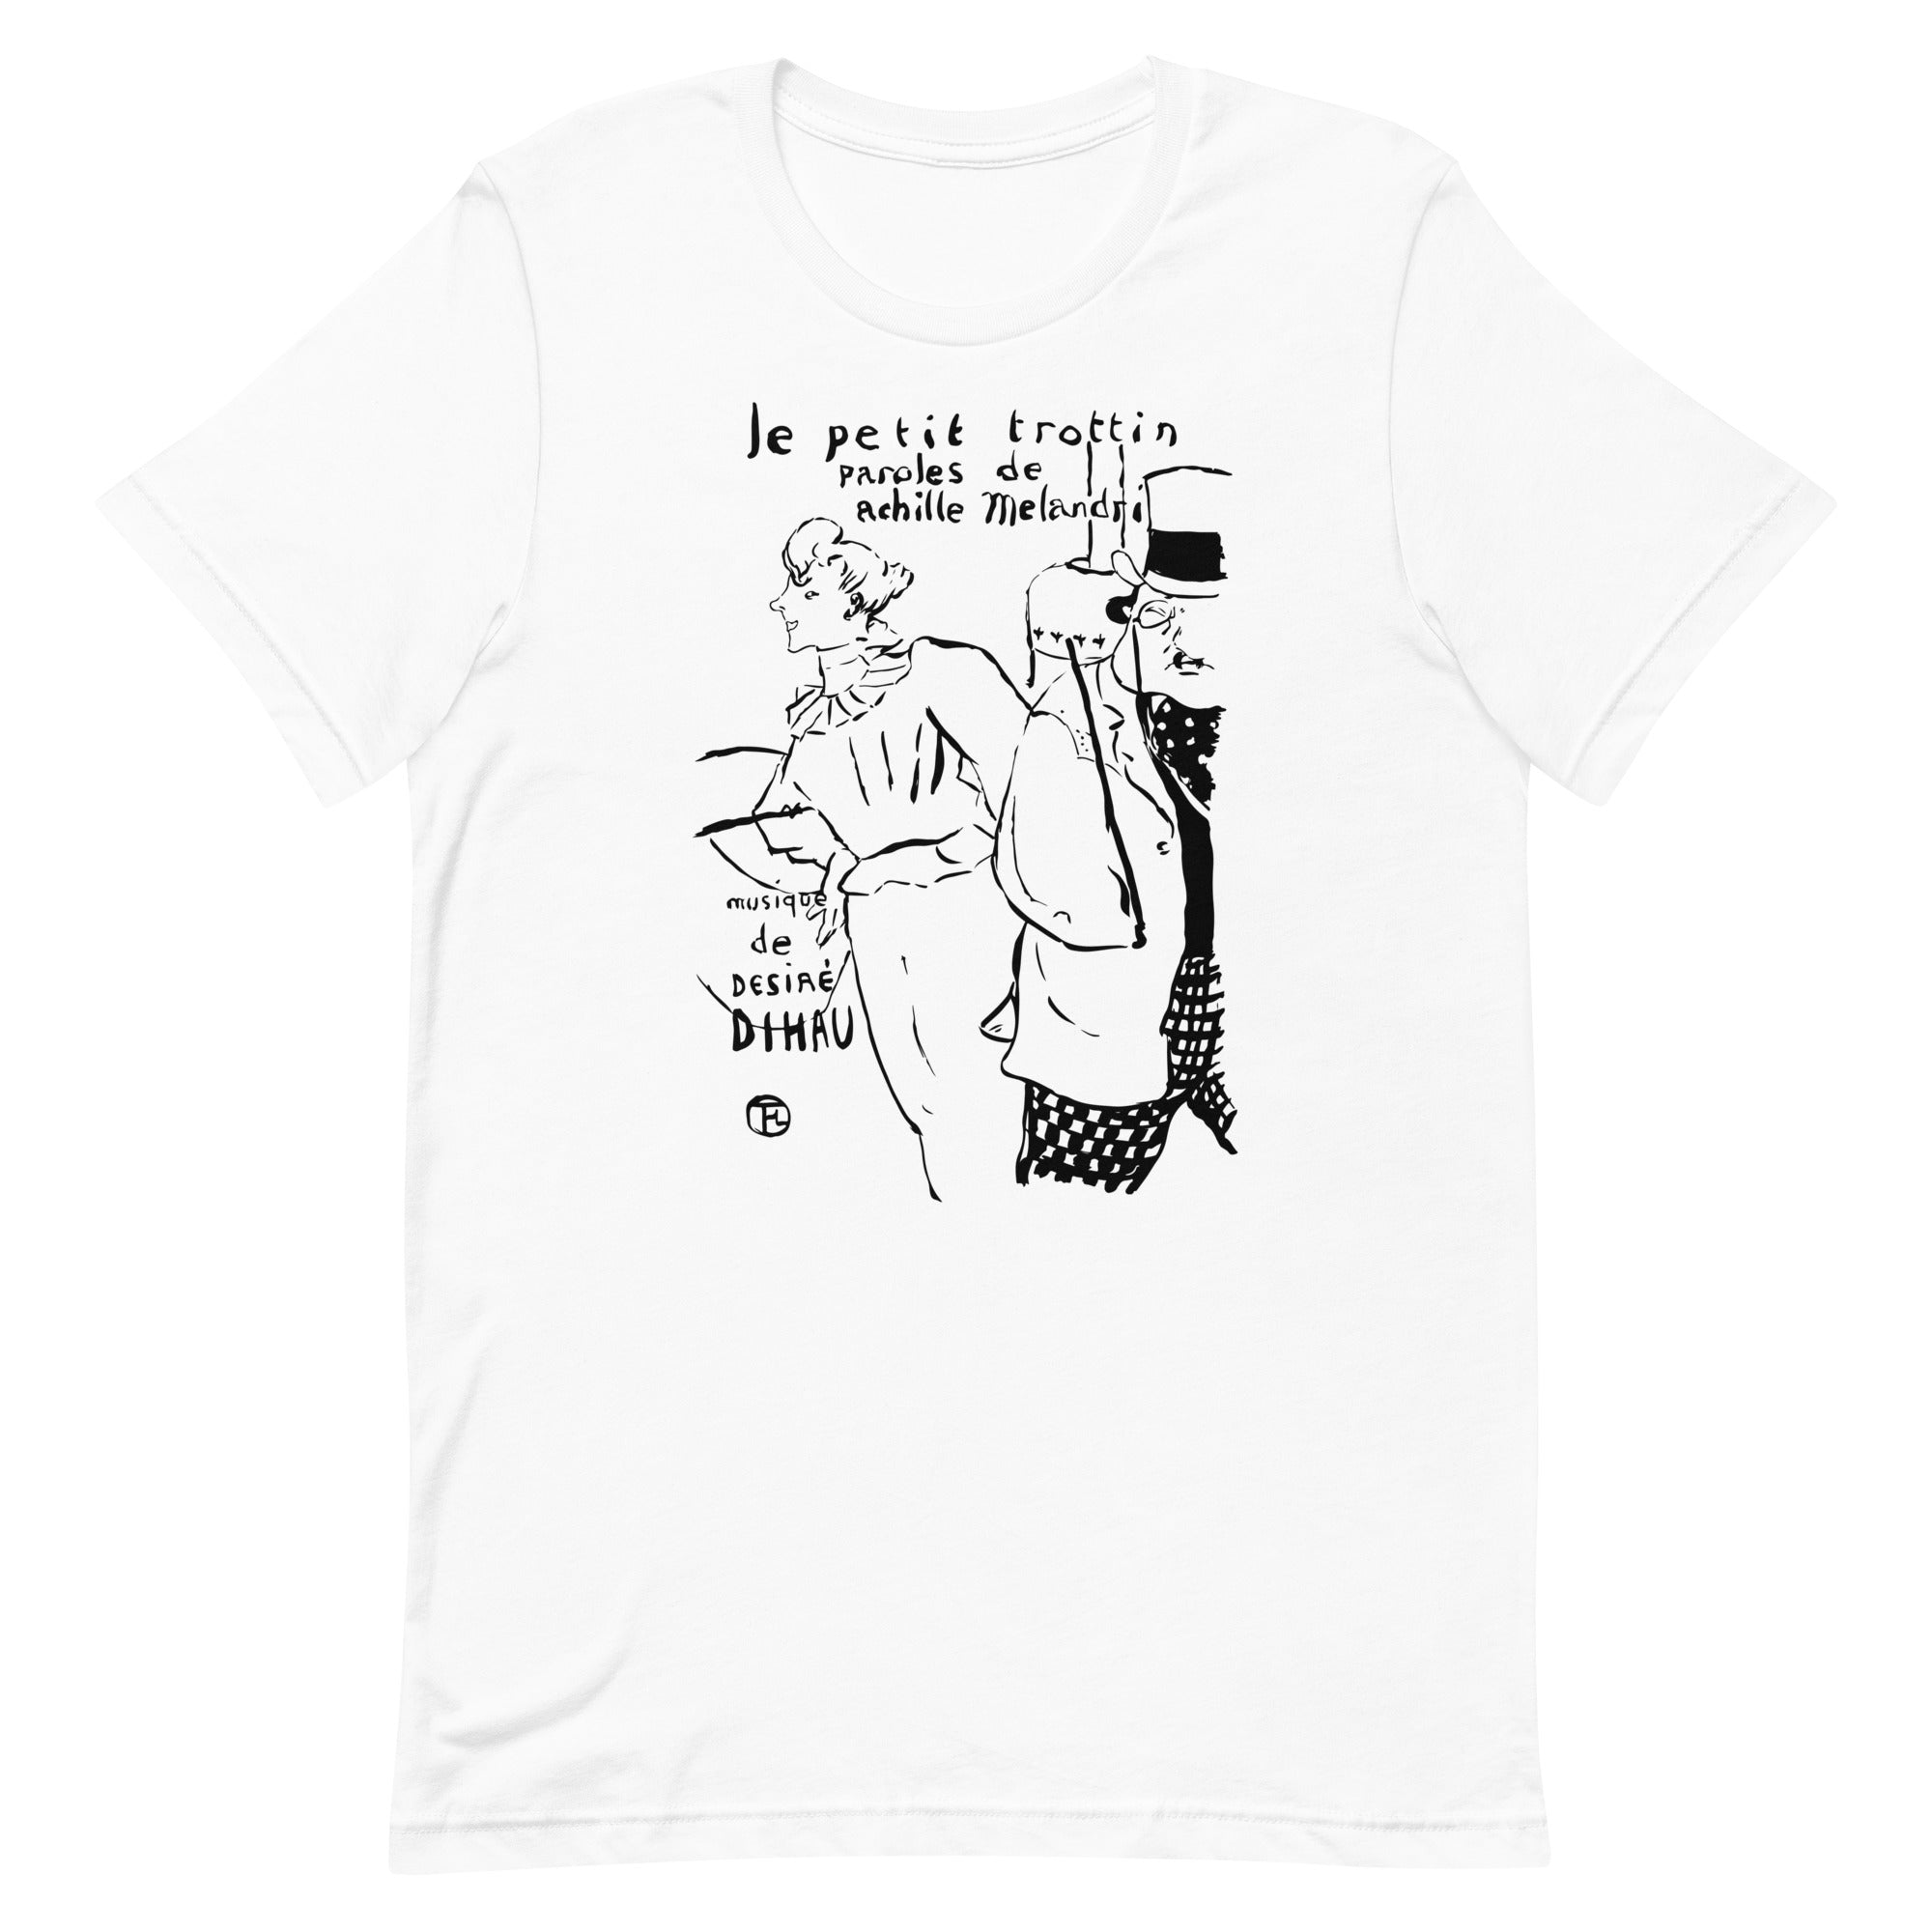 Petite fille de courses. Toulouse-Lautrec. T-shirt unisexe